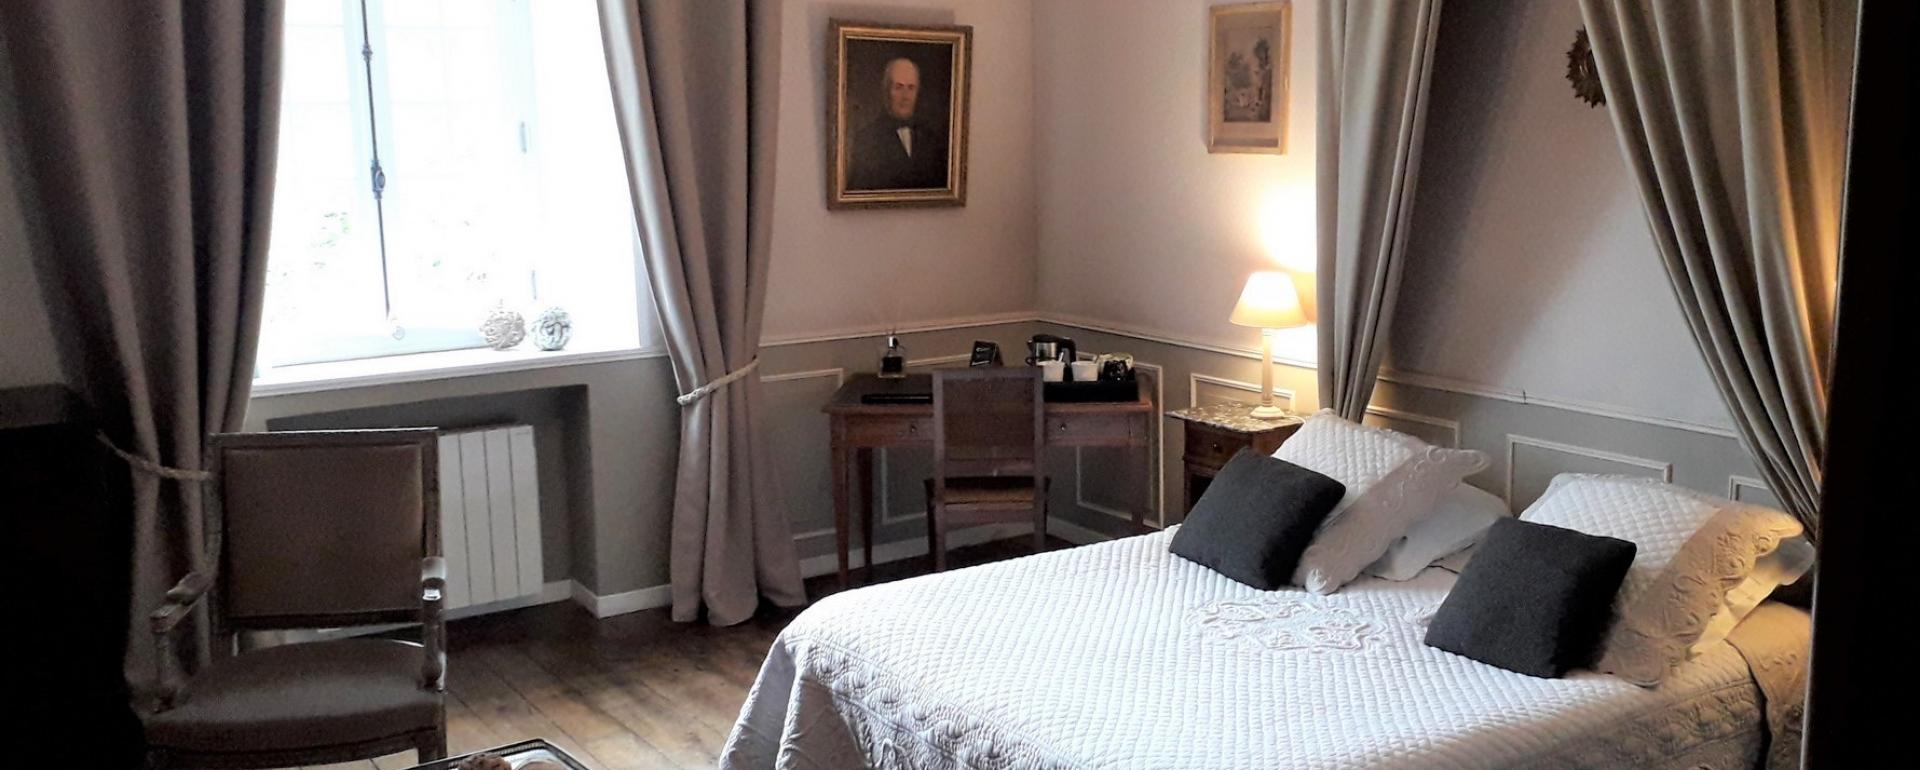 Chambres d'hôtes à Saint Malo, Manoir de la Baronnie